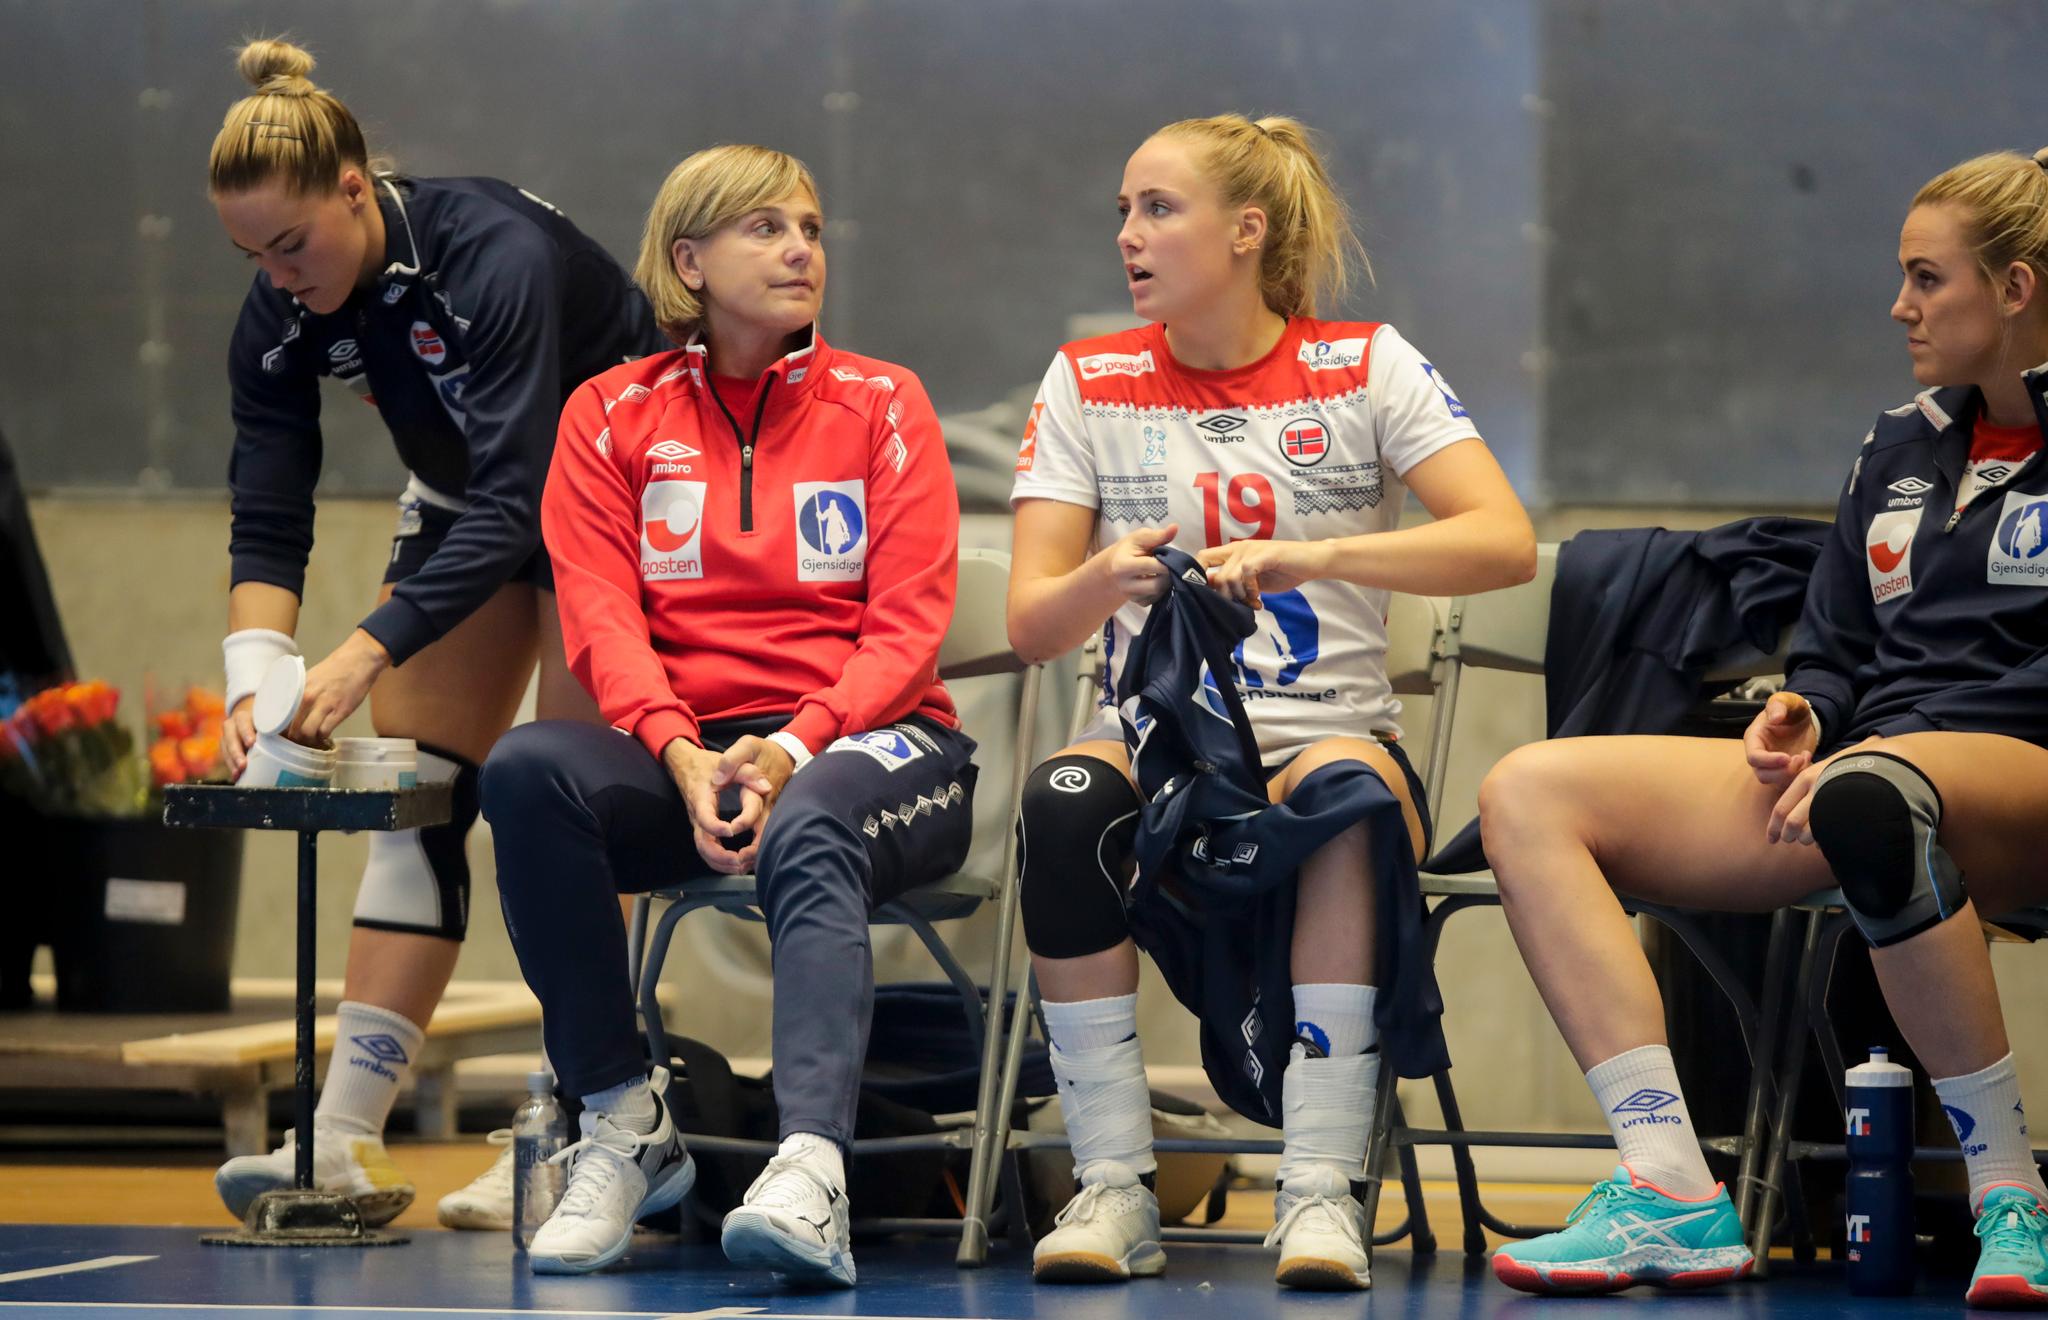 Da Norge spilte turnering på hjemmebane i Stavanger i september, ble Moa Høgdahl tatt med. Det ga en pekepinn på VM-uttak. Her på benken med mamma.